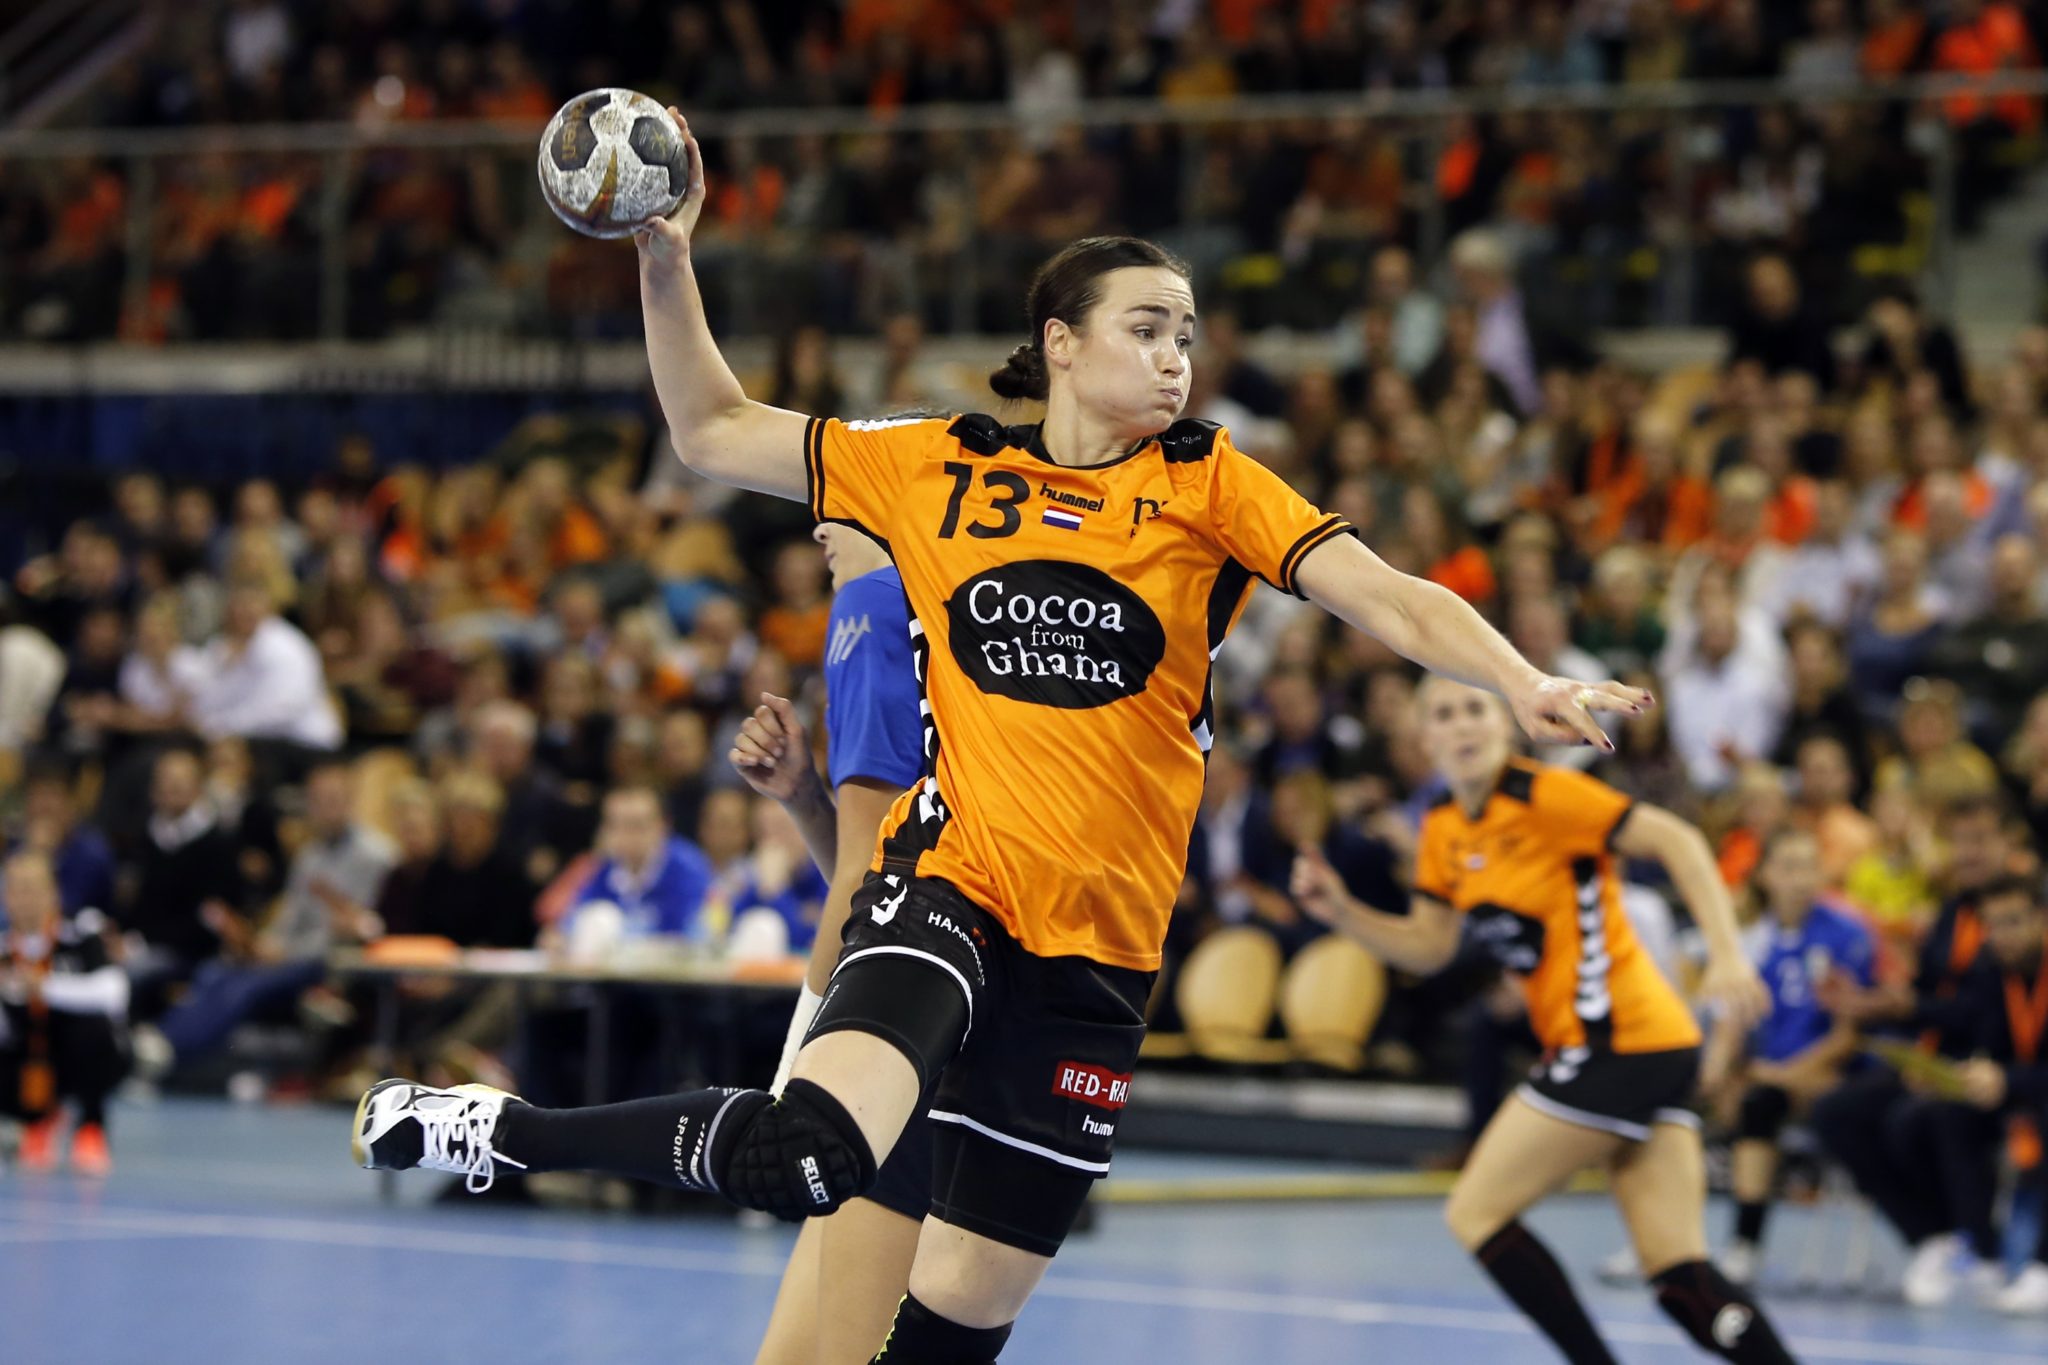 Yvette Broch Heeft Besloten Te Stoppen Met Handballen